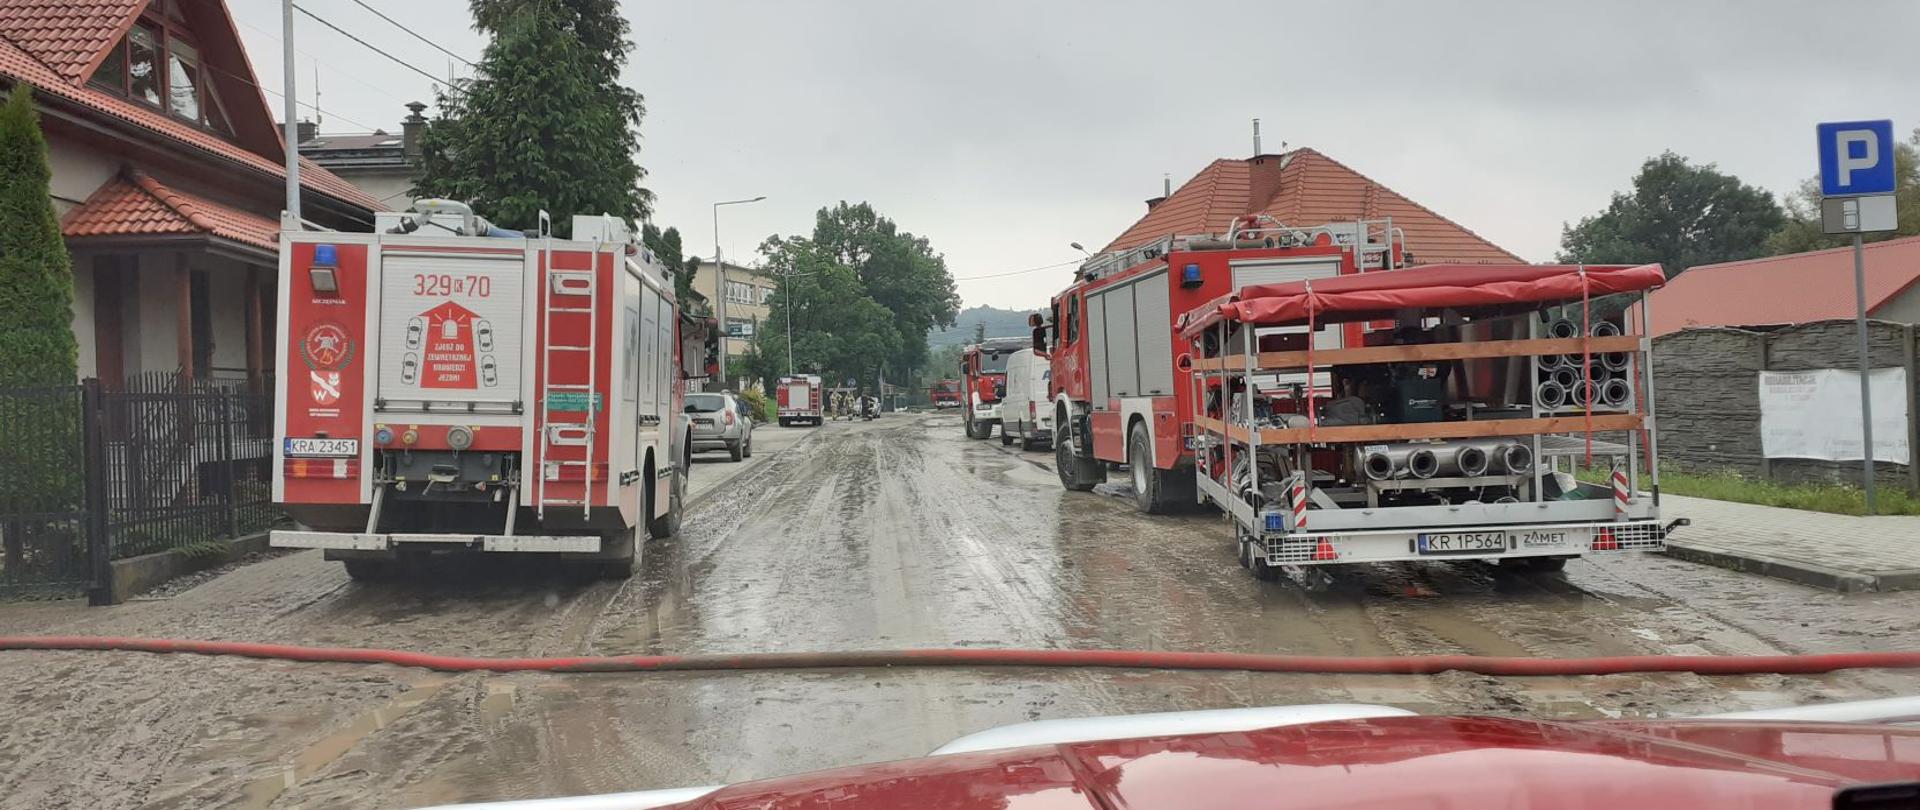 Zdjęcie przedstawia drogę gminną i centrum miejscowości Głogoczów po przejściu fali błota. Po obydwu stronach drogi stoją samochody strażackie, z których sprzęt wykorzystywany jest do wypompowywania wody z domów.